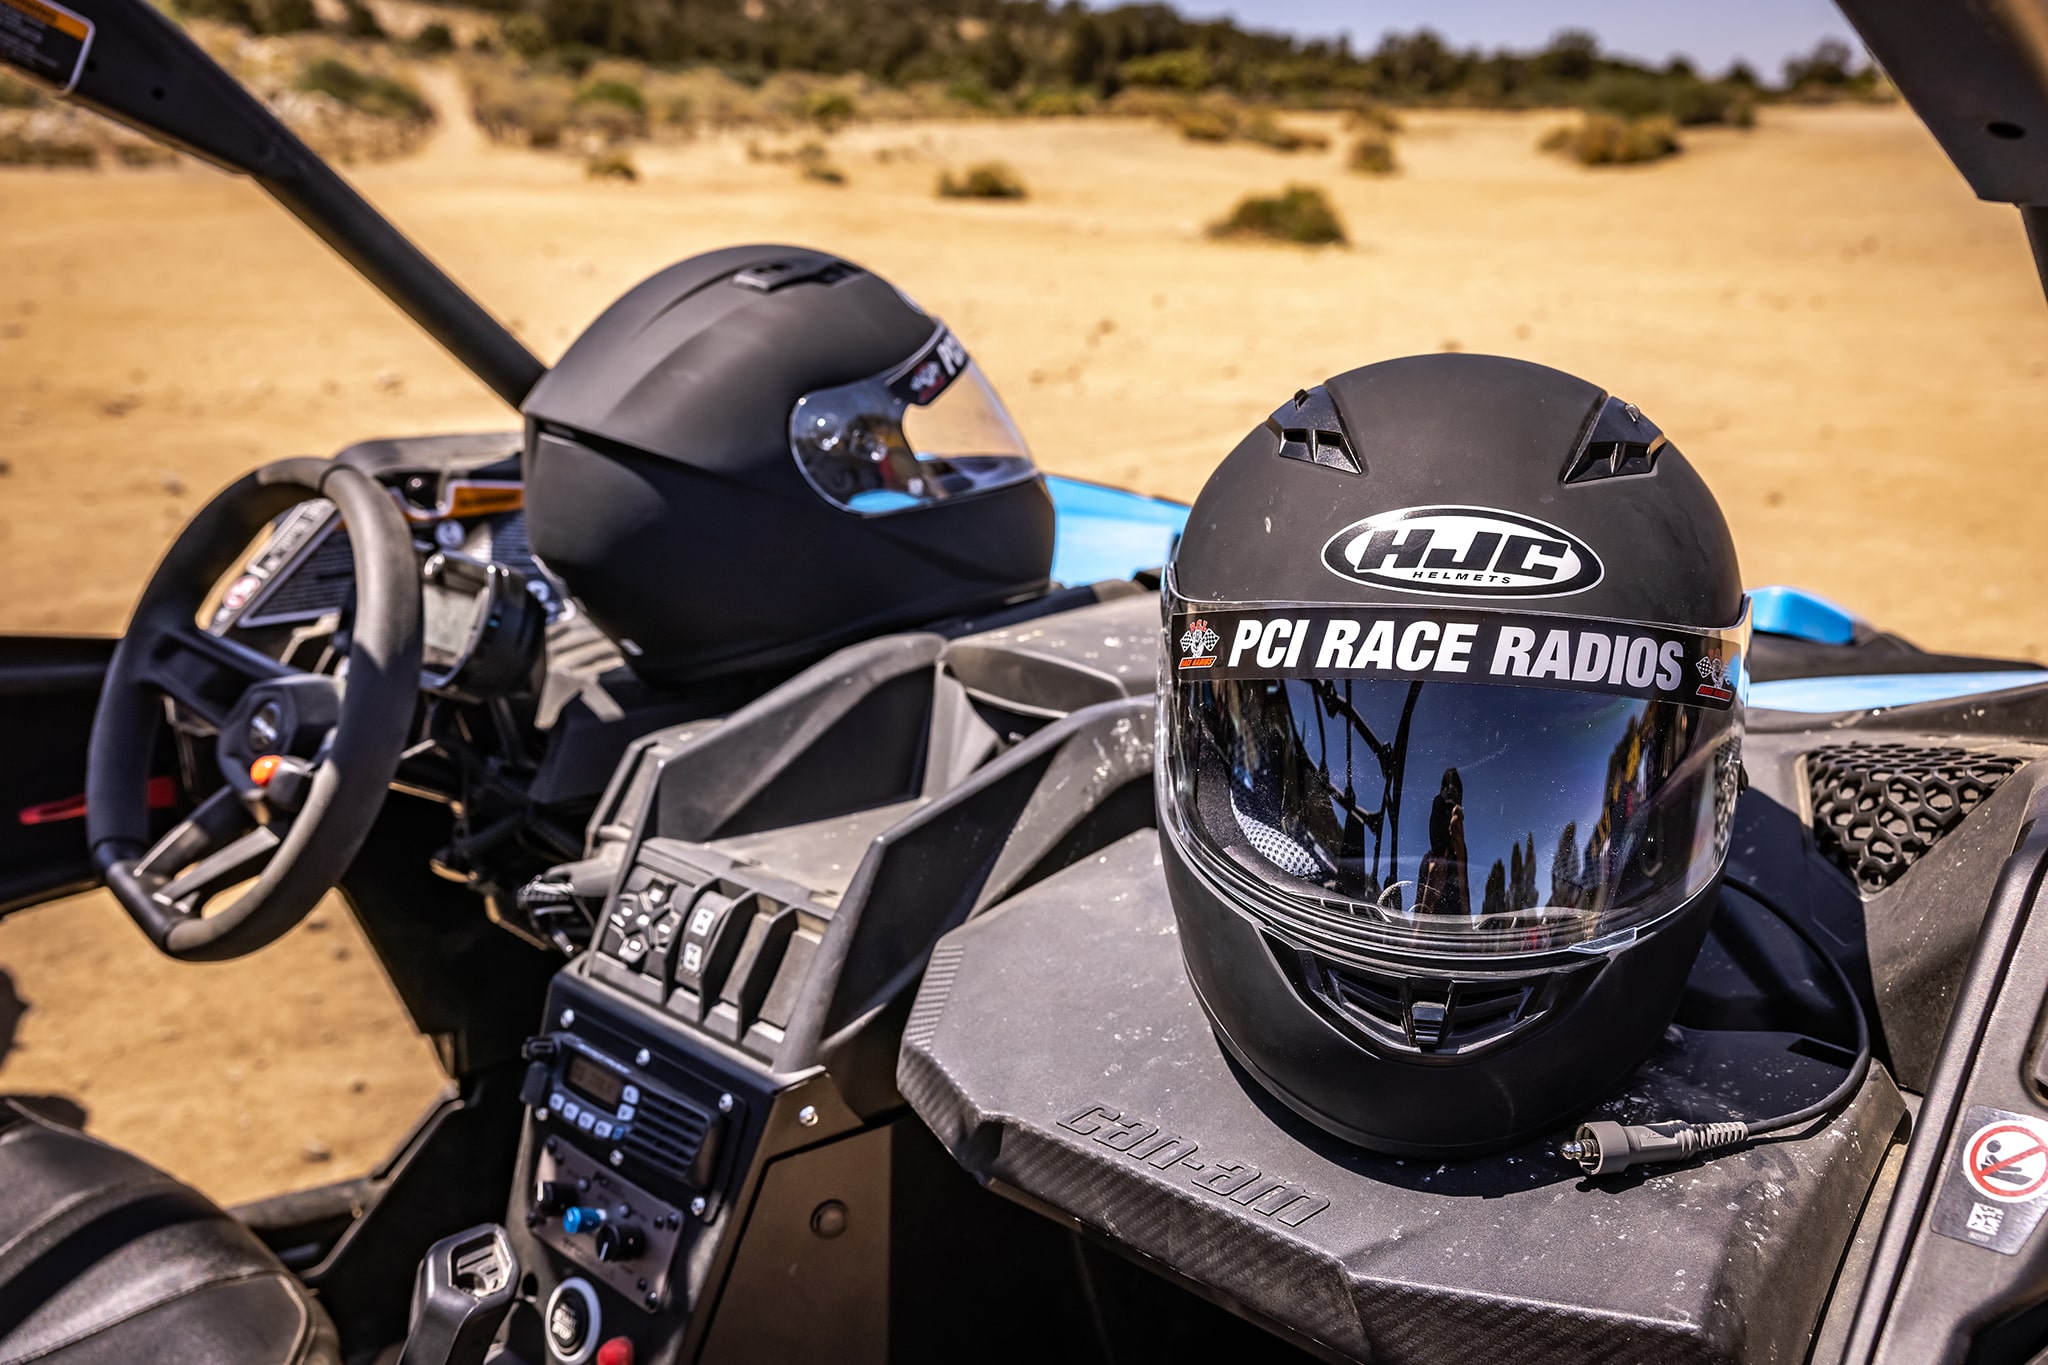 PCI Race Radio helmets